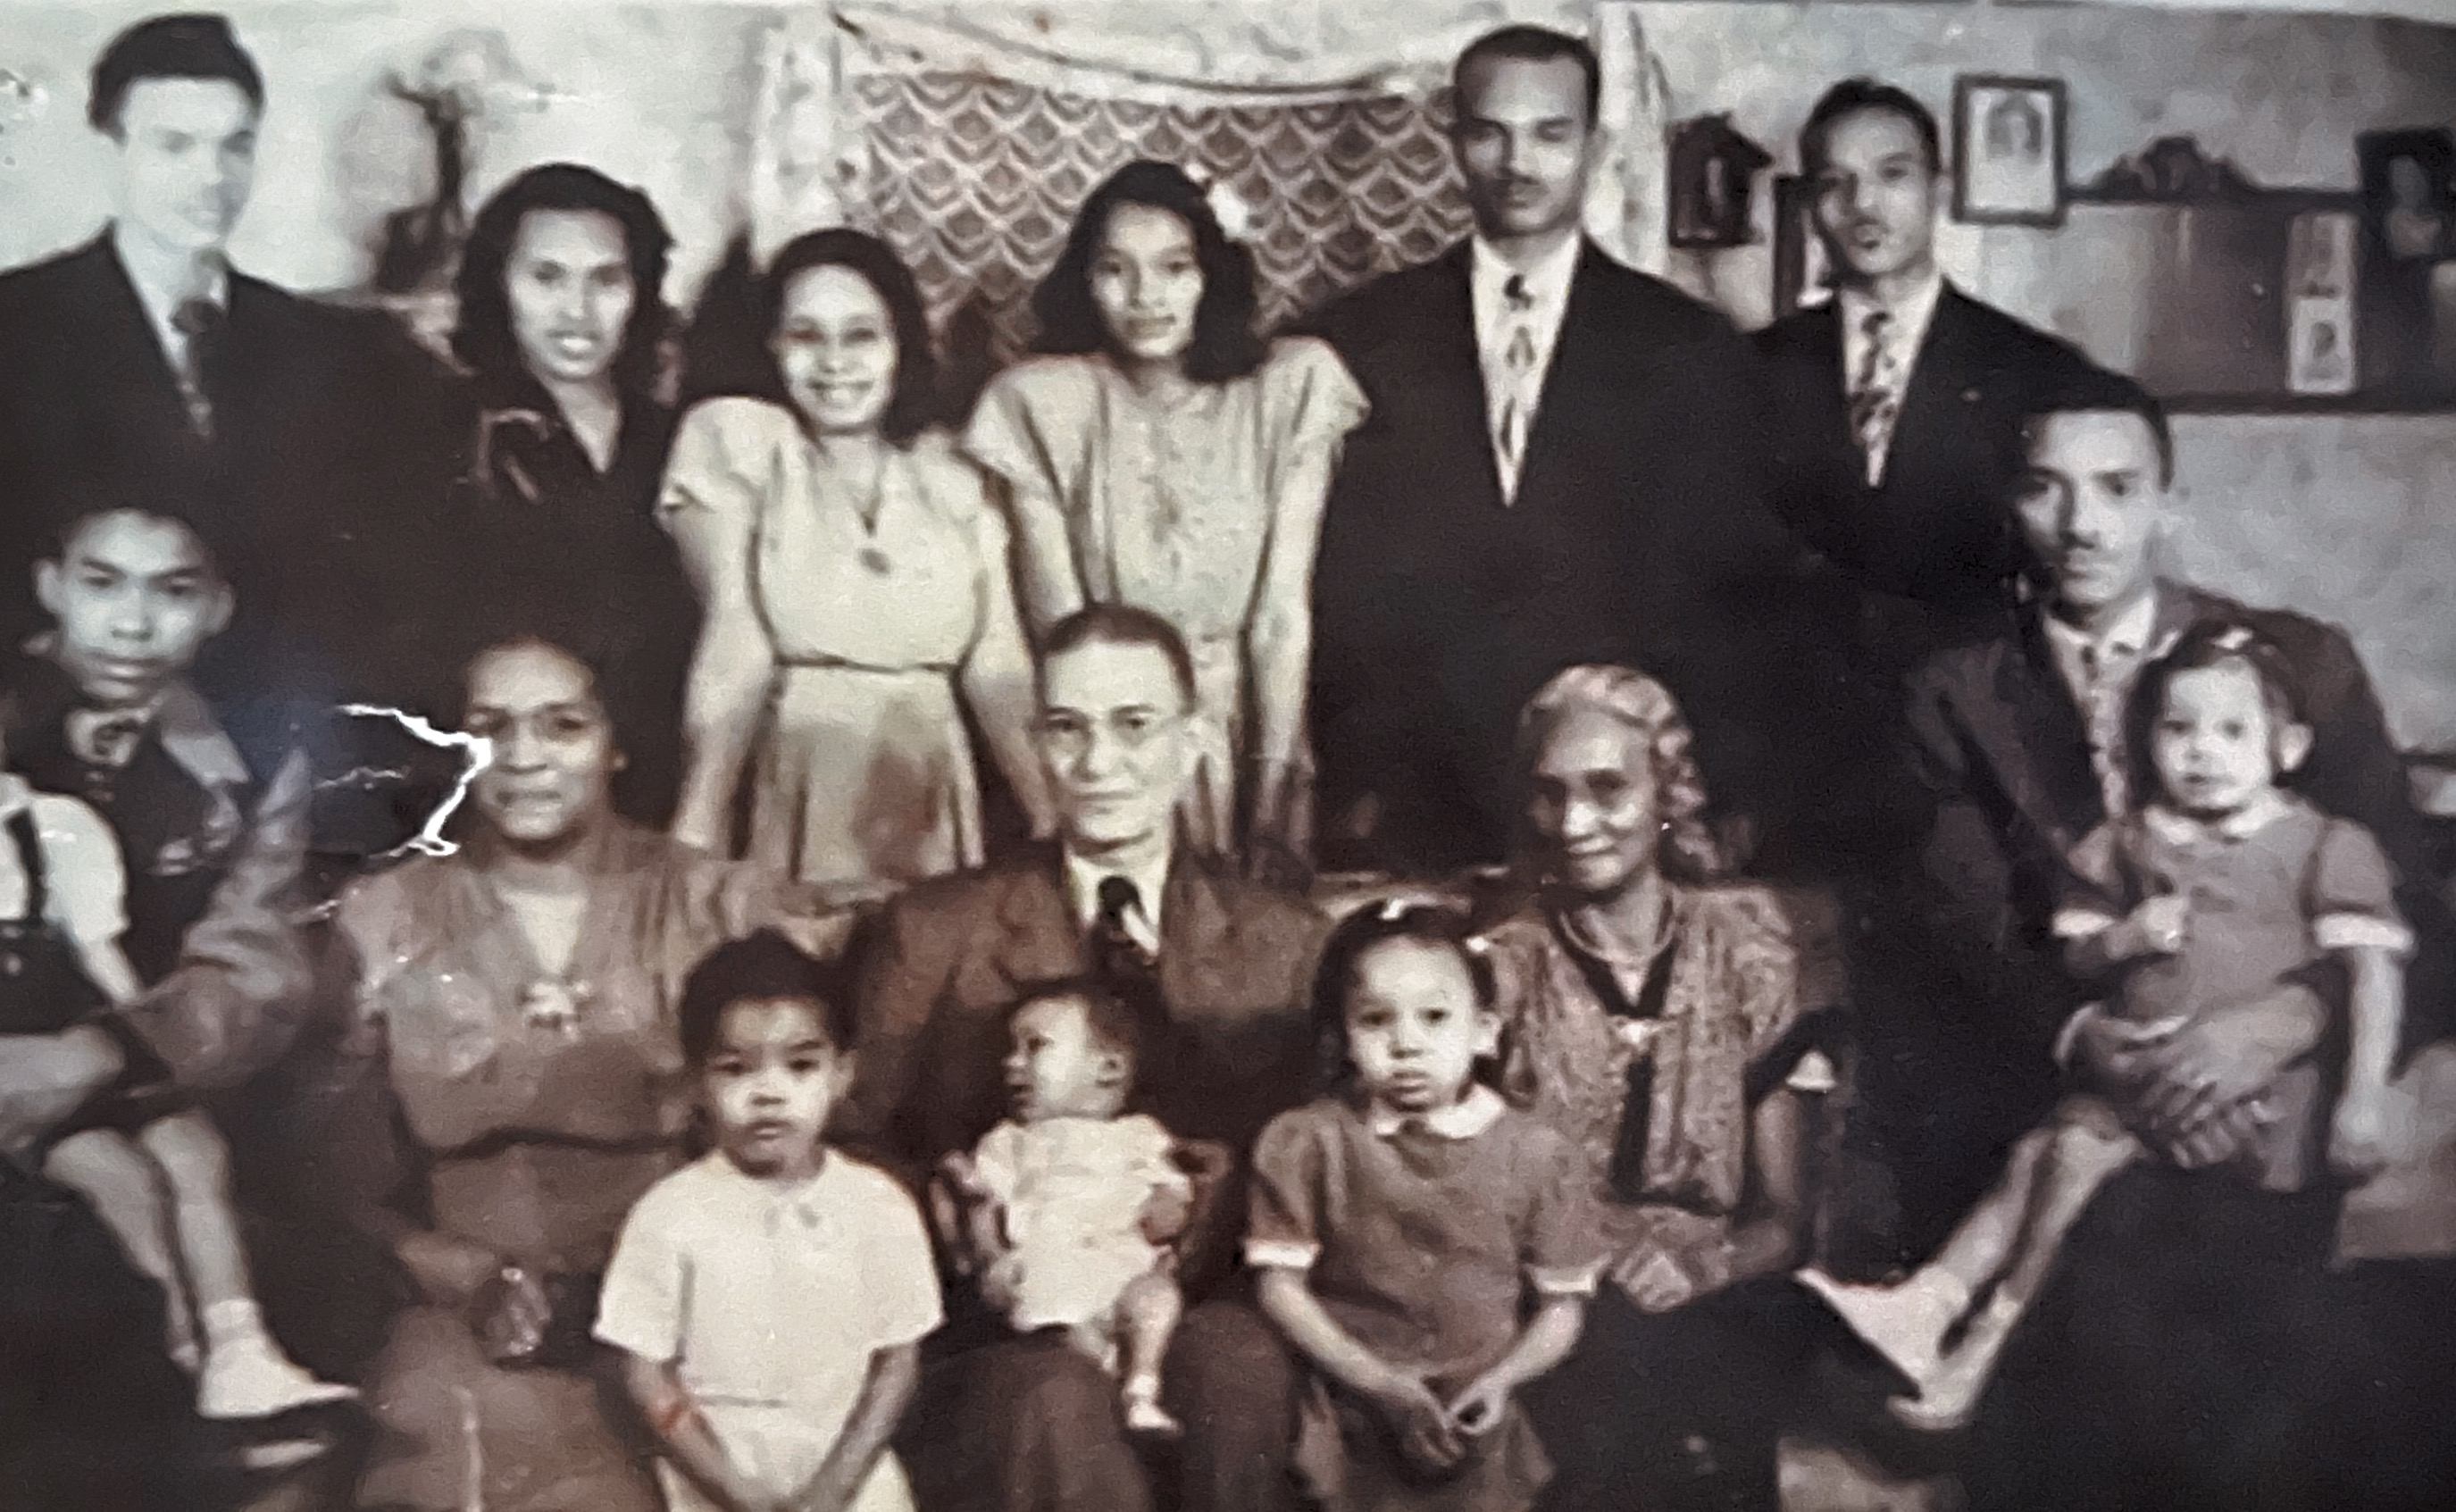 Gilbert Family - 1940’s